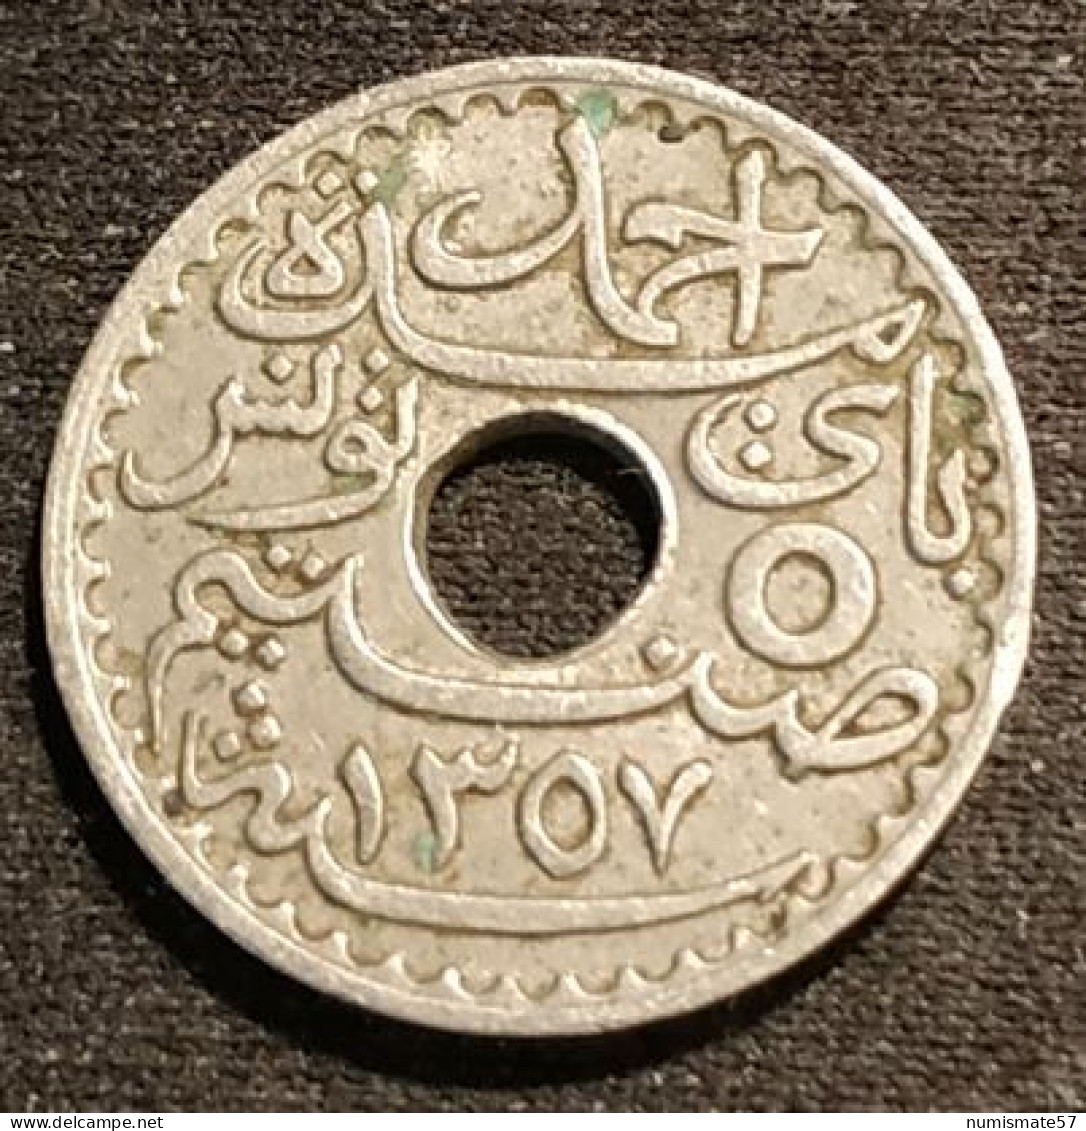 TUNISIE - TUNISIA - 5 CENTIMES 1938 ( 1357 ) - Ahmad Pasha - Protectorat Français - KM 258 - Tunisia